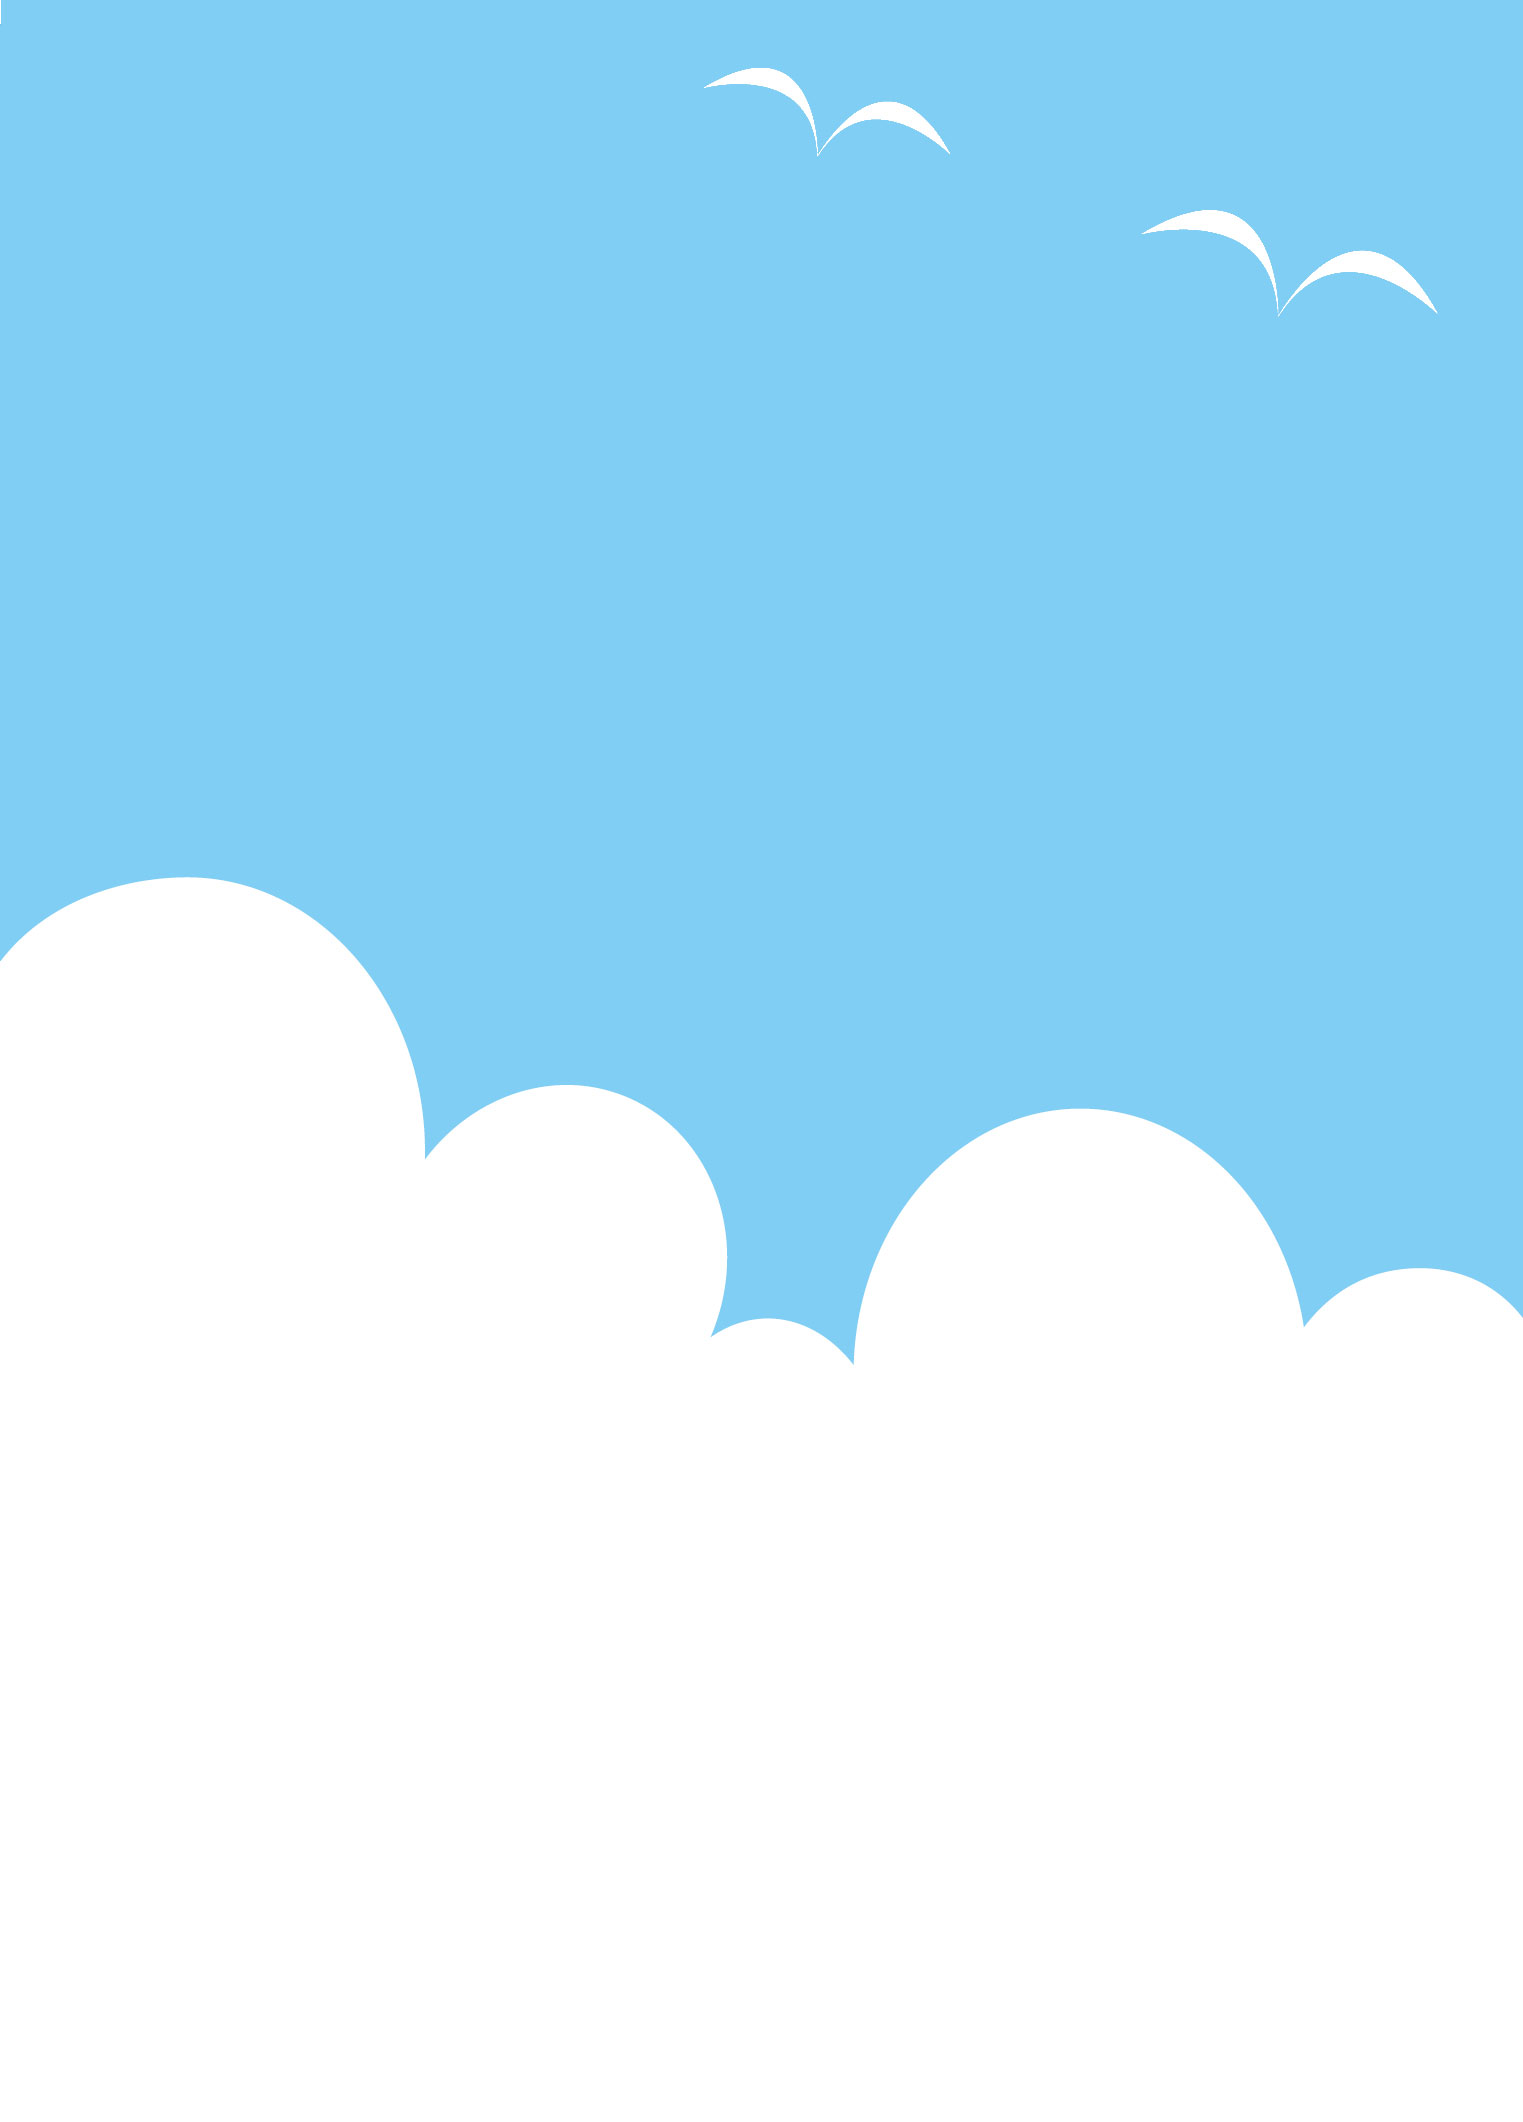 フレーム 囲い枠のイラストno 299 夏の青空 雲と鳥 無料のフリー素材集